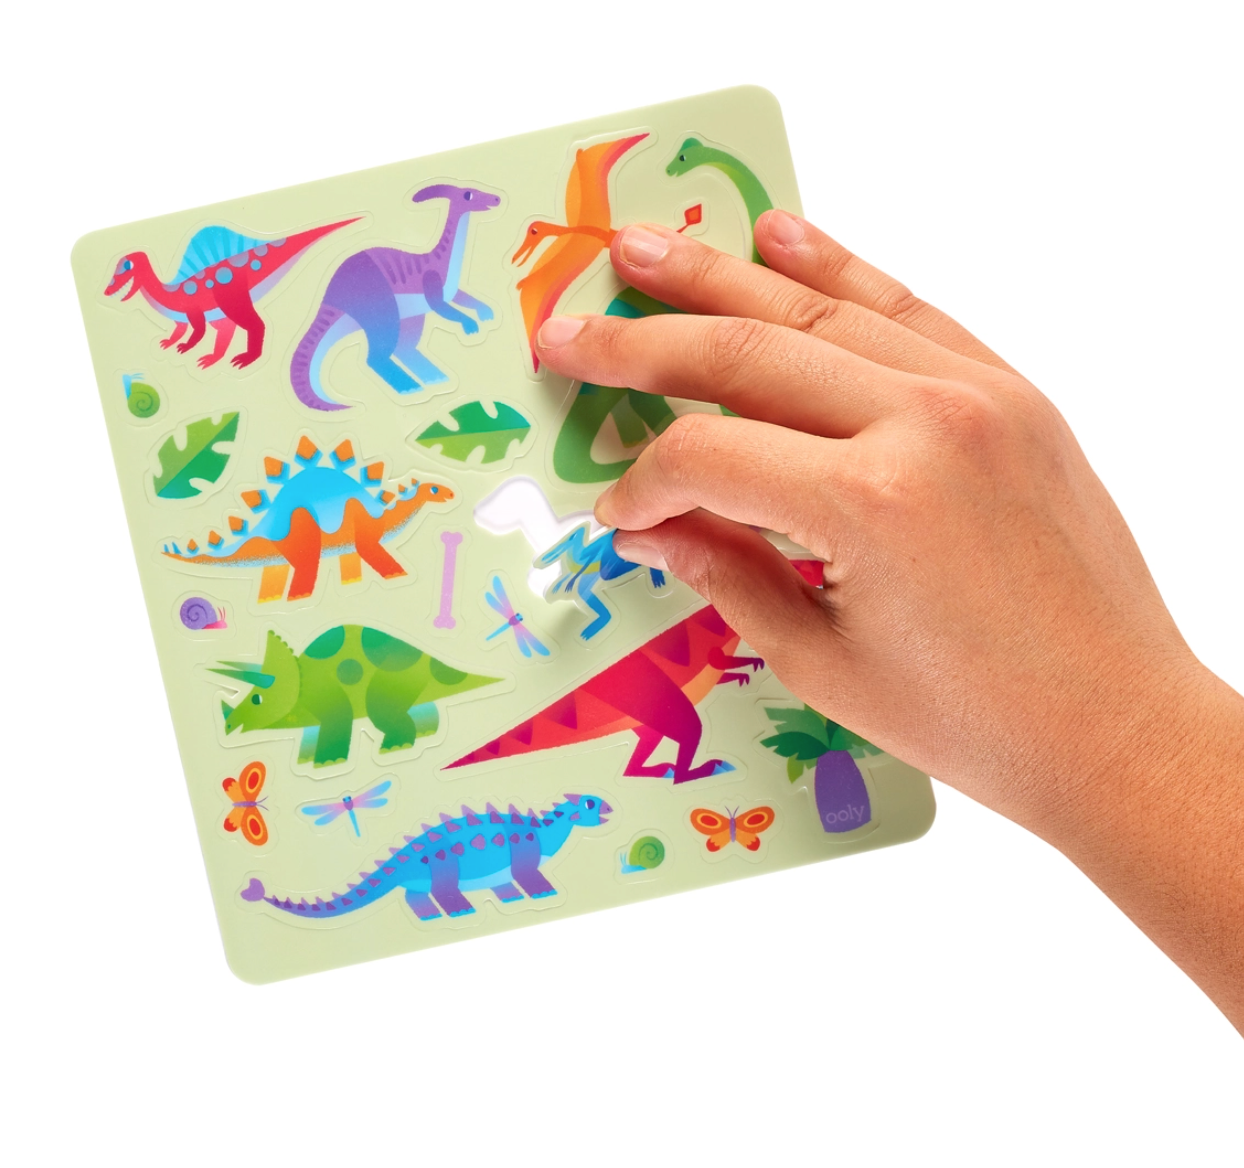 Play Again! Dino Mini On-The-Go Activity Kit